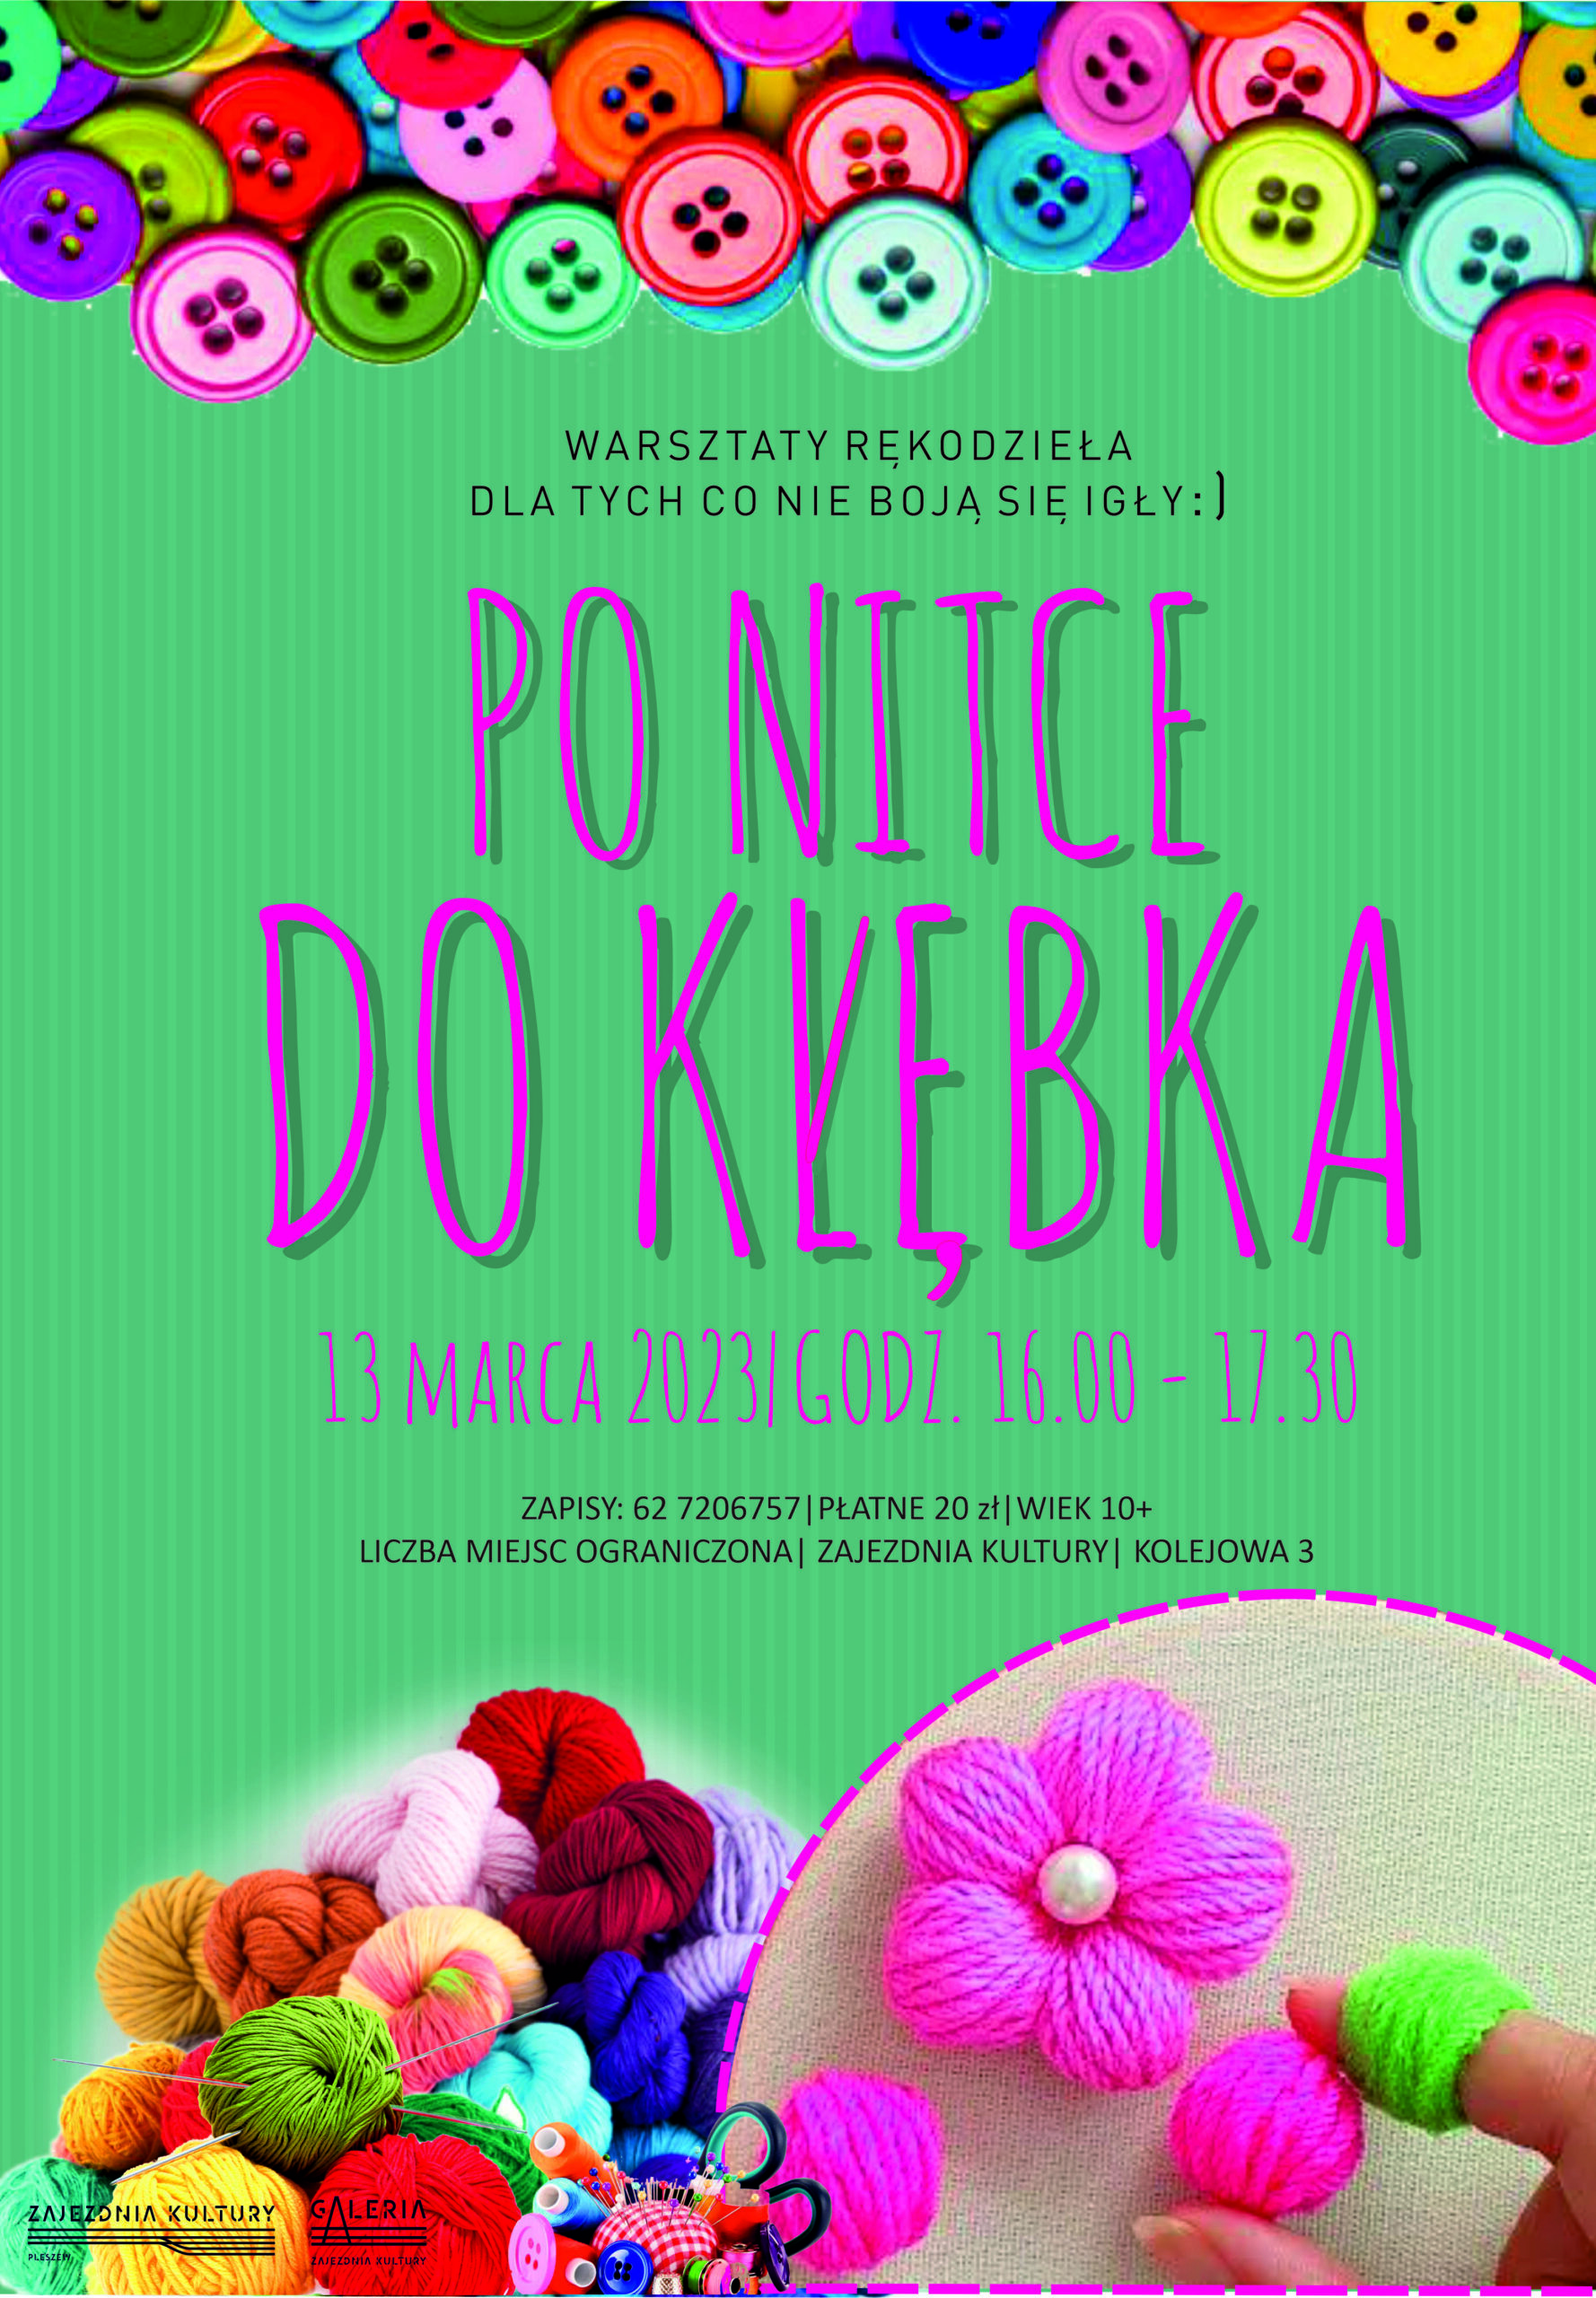 Plakat warsztatów rękodzieła "Po nitce do kłębka" odbywaących się w Zajezdni Kultury w Pleszewie 13 marca 2023 roku w godzinach 16:00-17:30.